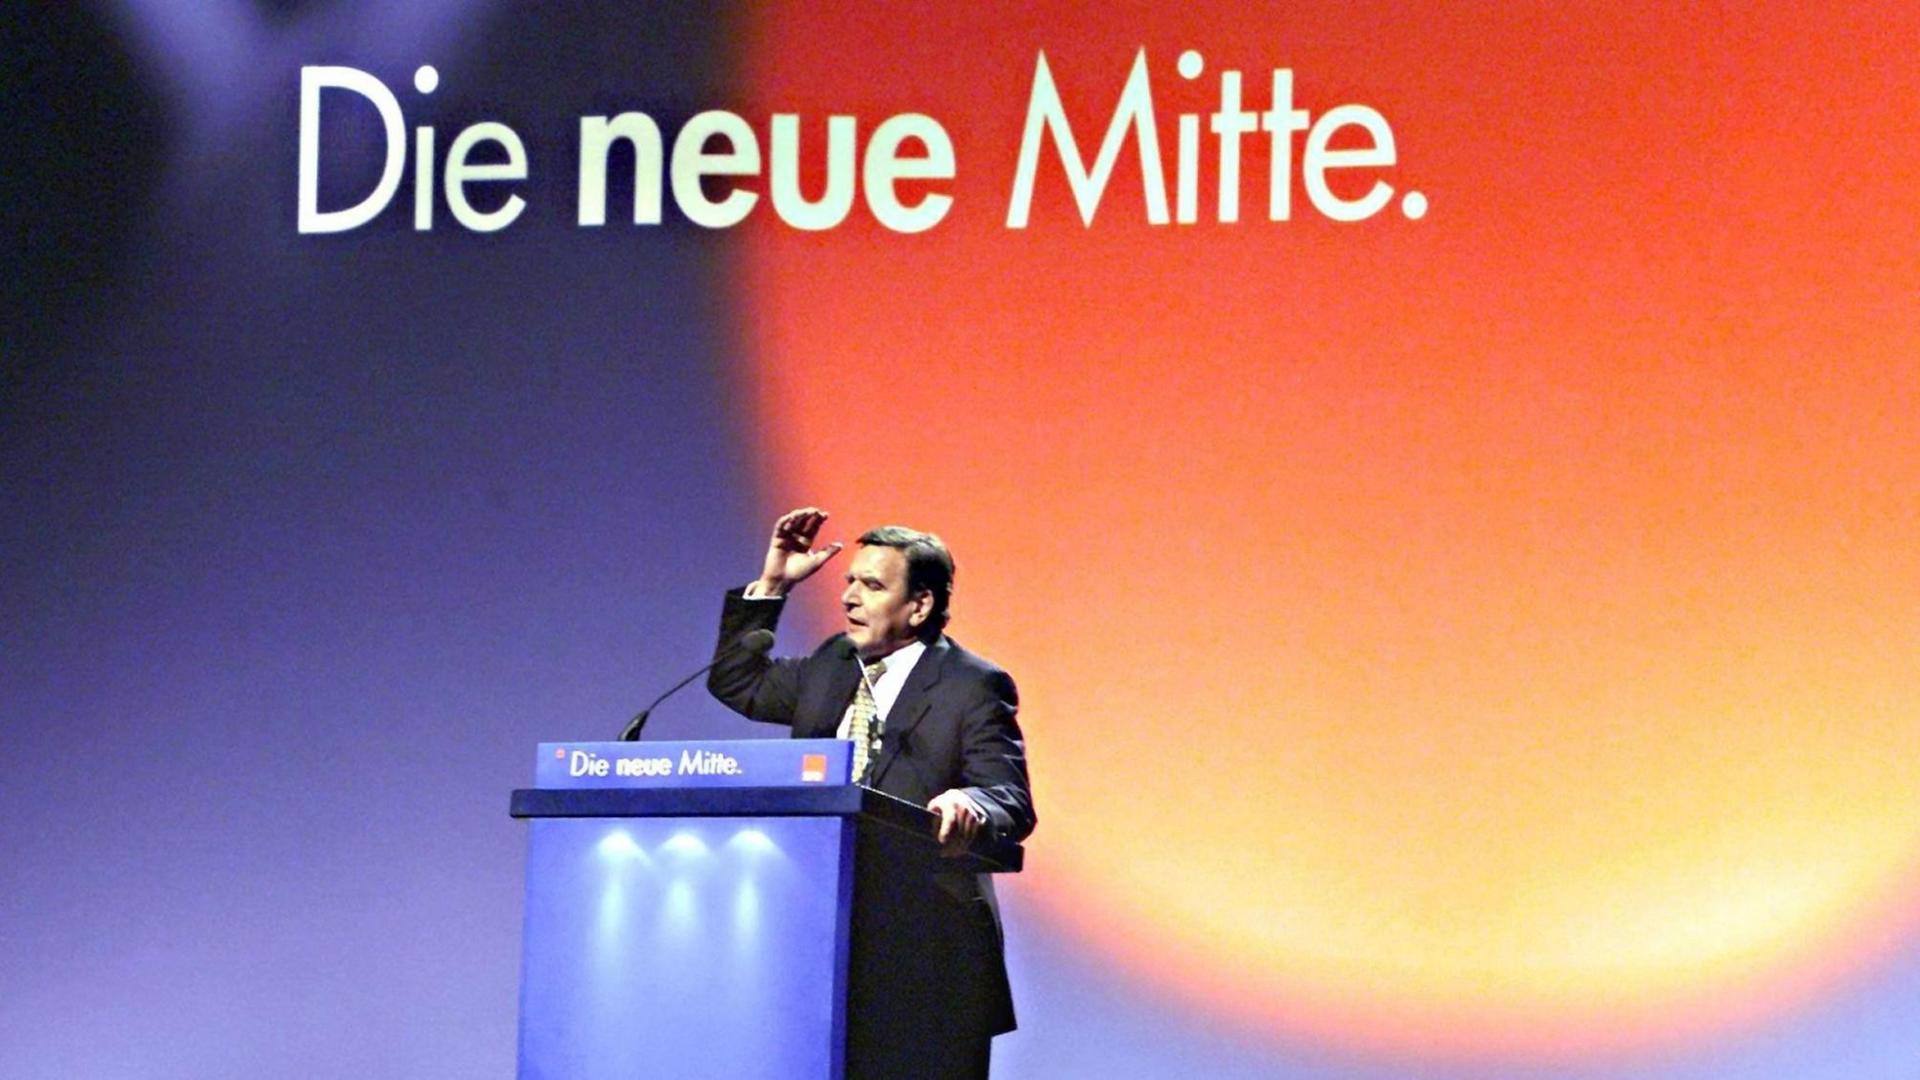 Der damalige SPD-Kanzlerkandidat Gerhard Schröder redet vor dem SPD-Slogan "Die neue Mitte".